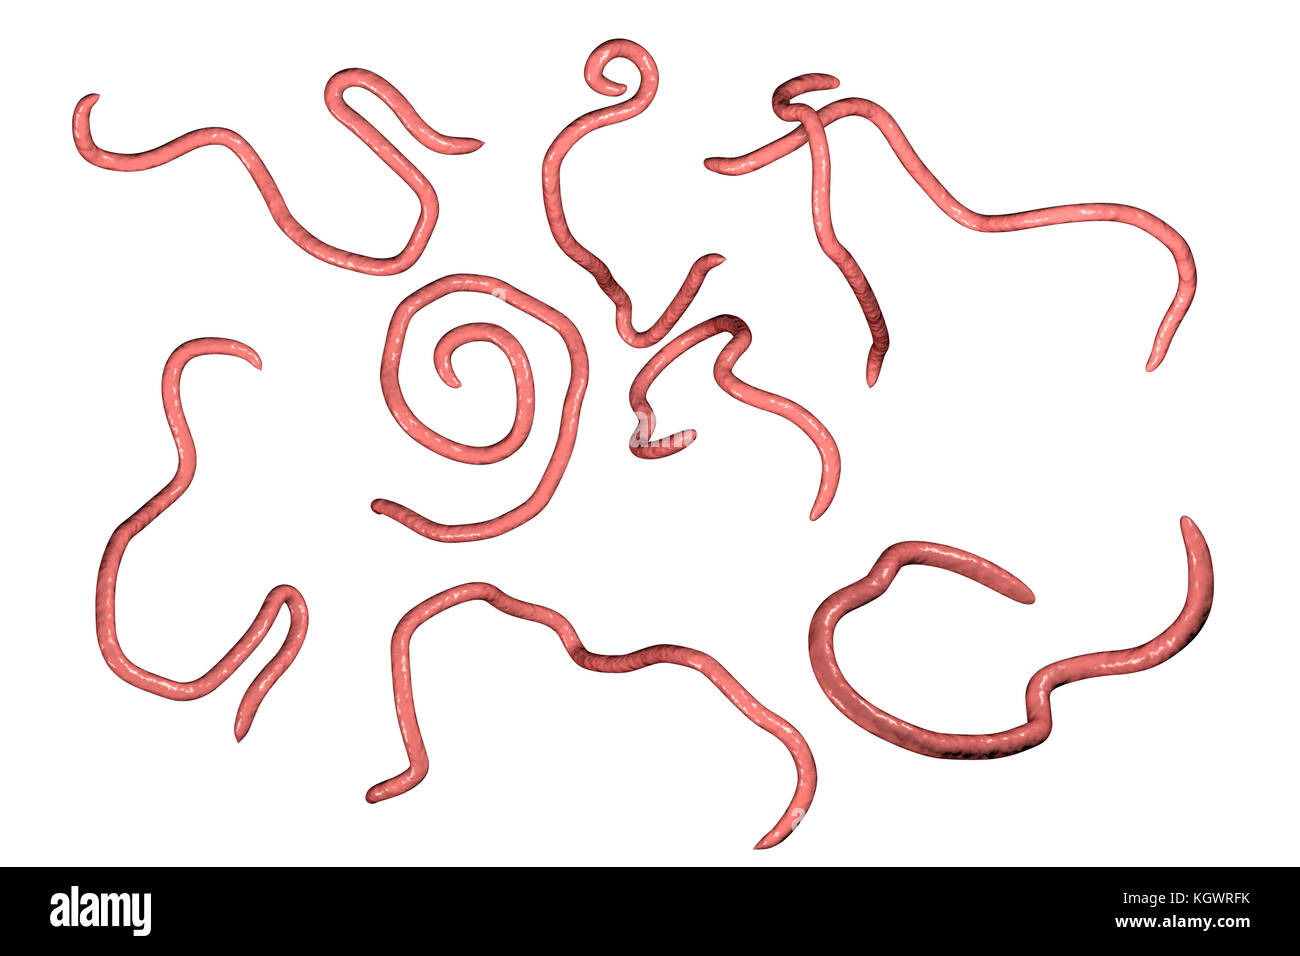 Fadenwürmer, computer Abbildung. Fadenwürmer Nematoden sind Würmer, der große Darm und Caecum von vielen Tieren schmarotzen. Beim Menschen die gemeinsamen Infektion enterobiasis verursachen. Nematoden sind nicht segmentierten Würmer, Parasiten oder frei sein - Leben je nach Art. Stockfoto